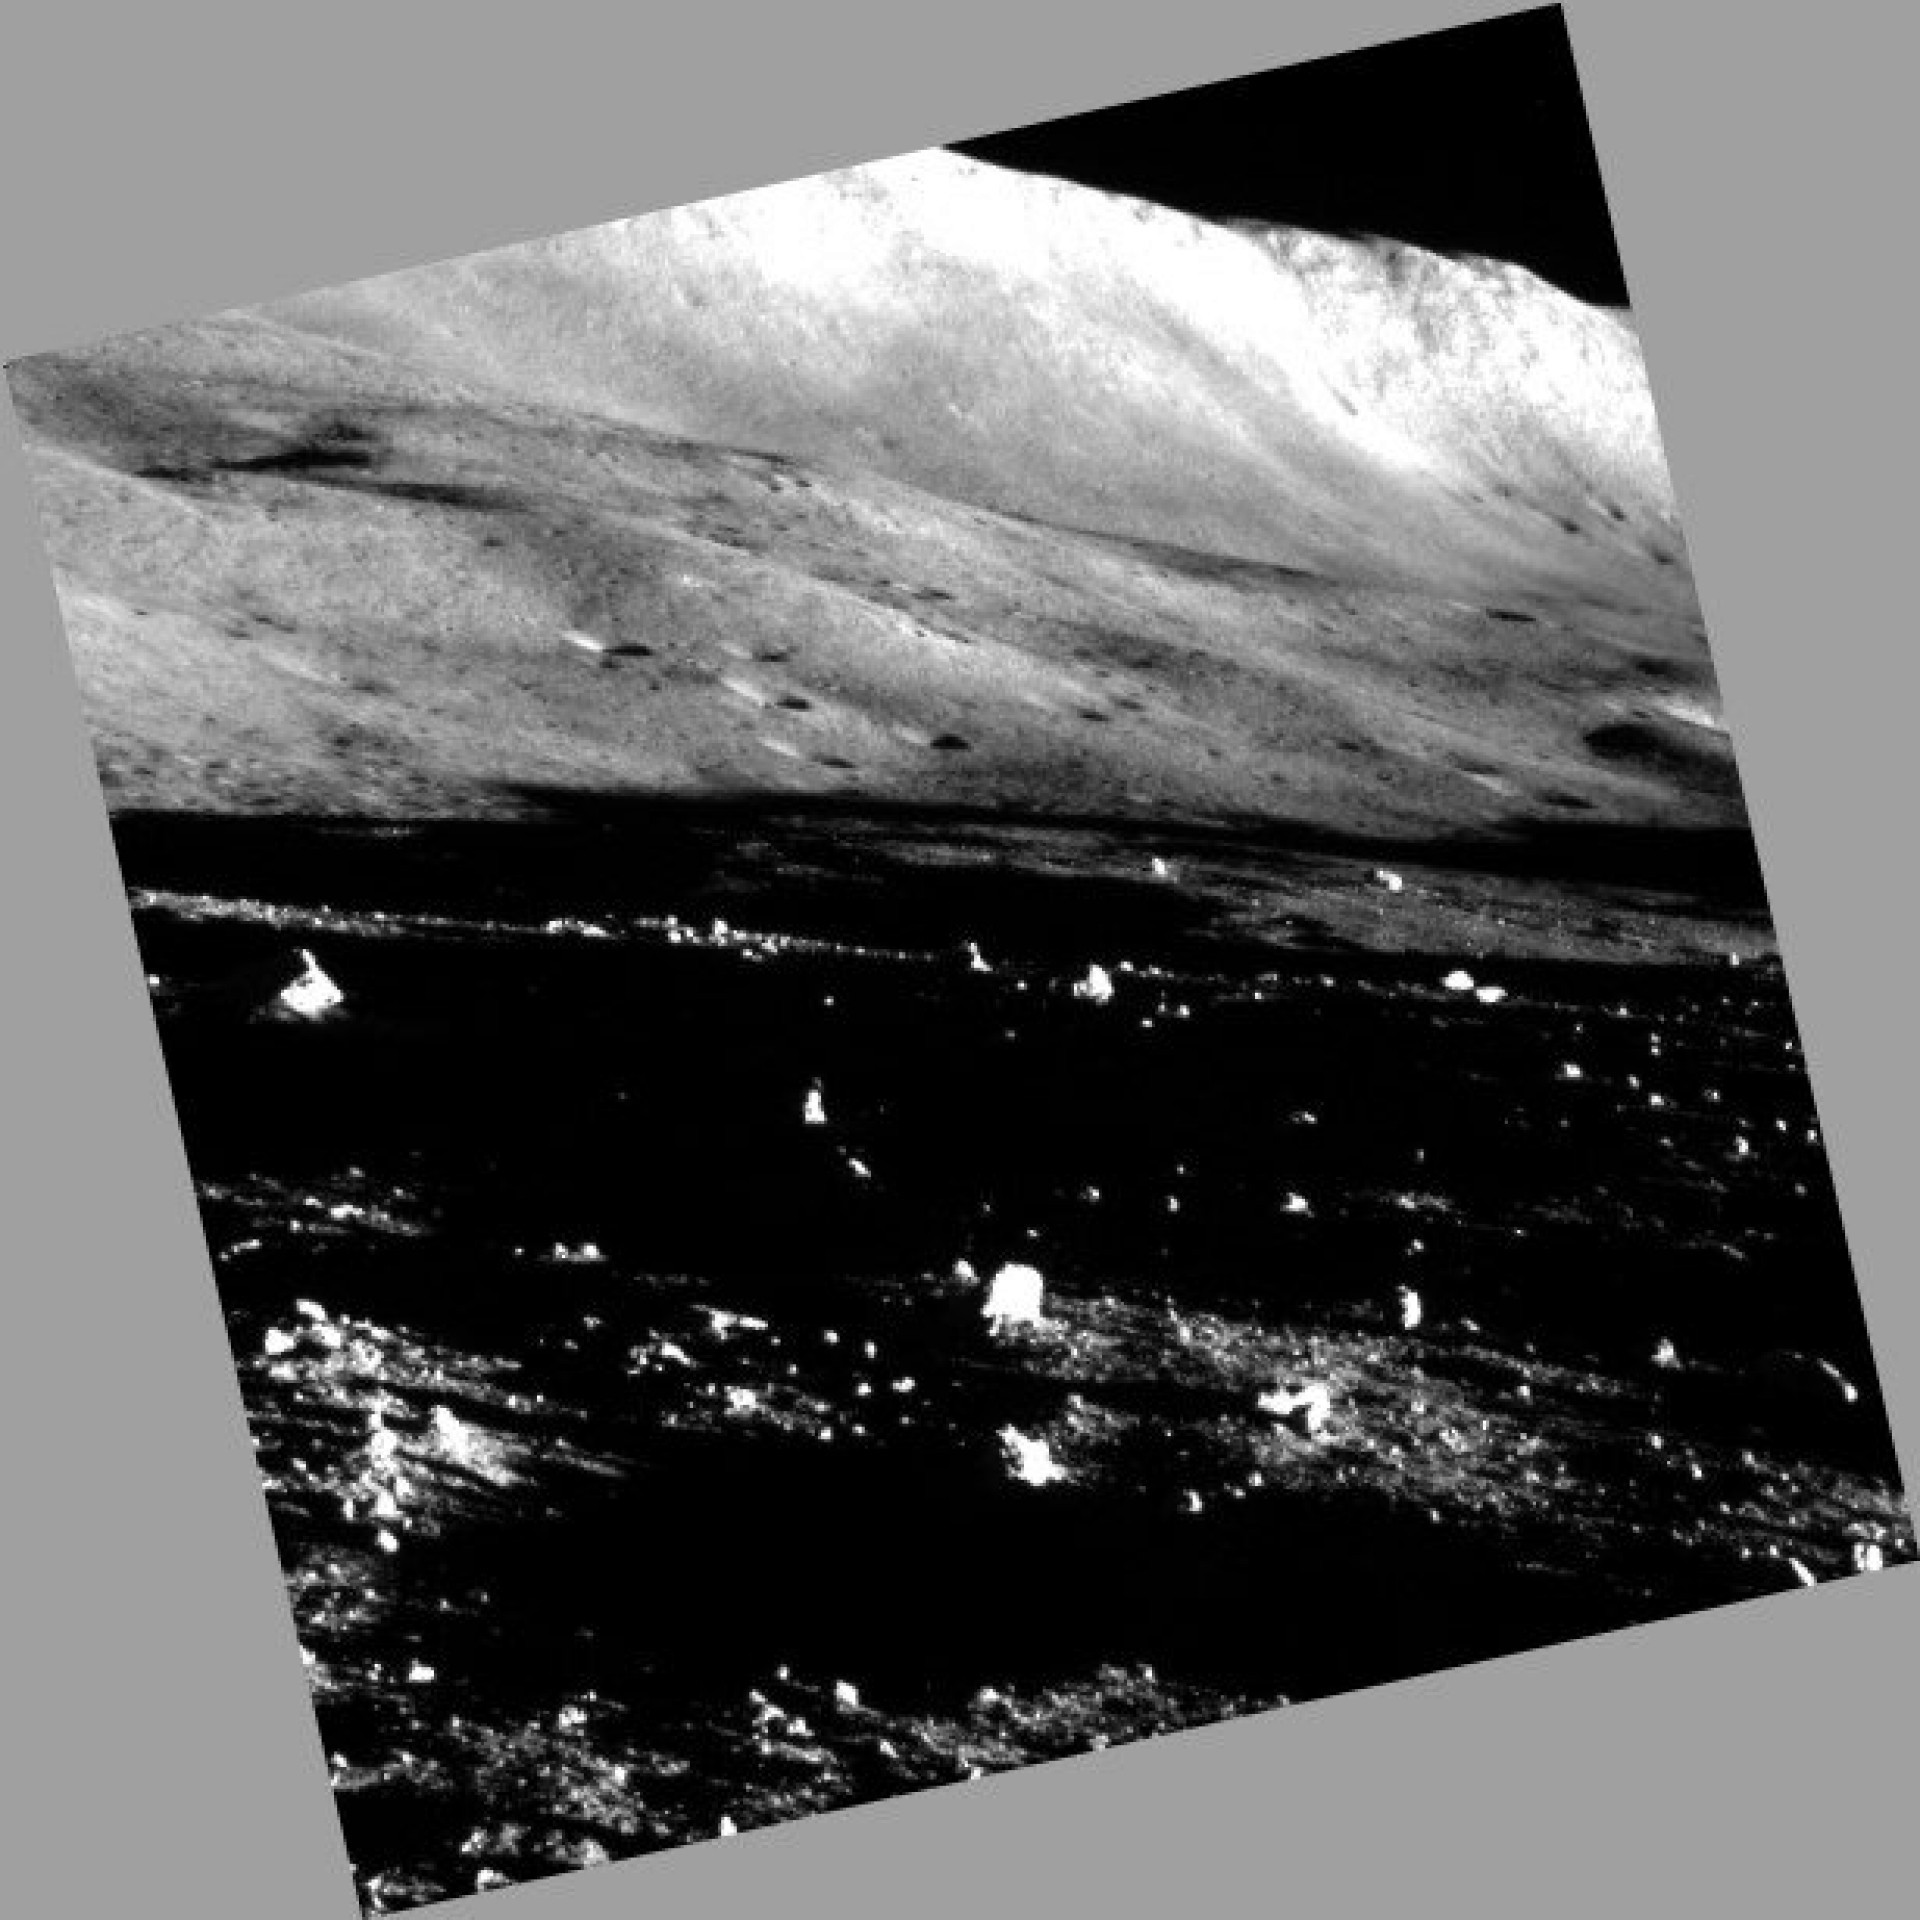 Foto tirada na superfície da Lua pelo módulo lunar SLIM - Divulgação / Jaxa